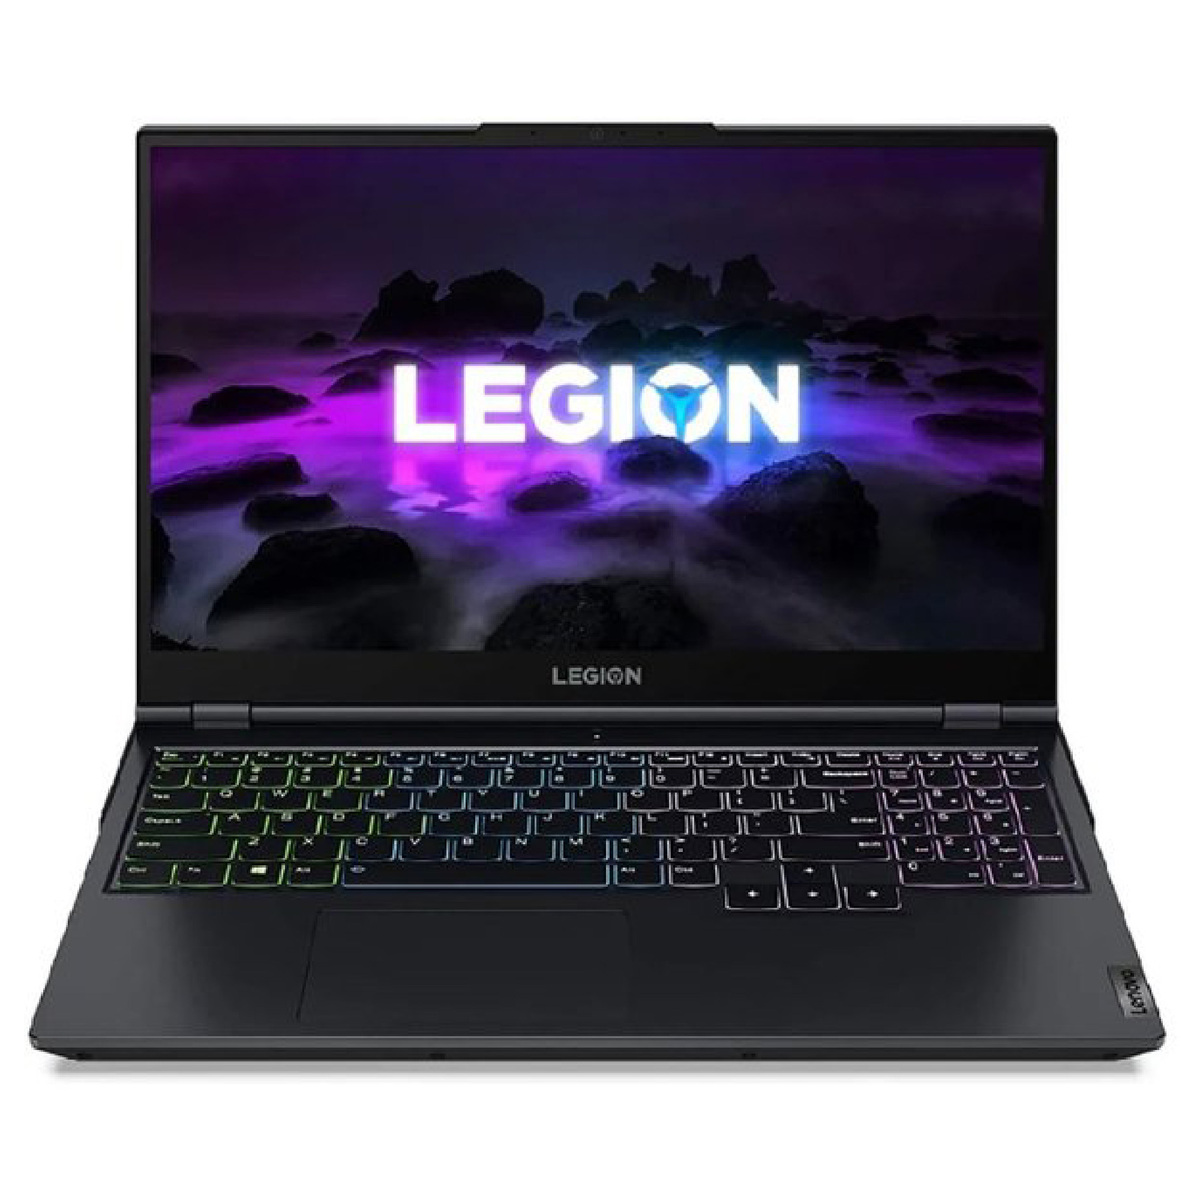 Lenovo Legion 5 82JU00TTAX Gaming Laptop,AMD Ryzen 7 5800H Processor,16GB RAM,1TB SSD, 15.6"FHD,NVIDIA GeForce RTX 3060 6GB,Windows 11, Phantom Blue,English-Arabic Keyboard